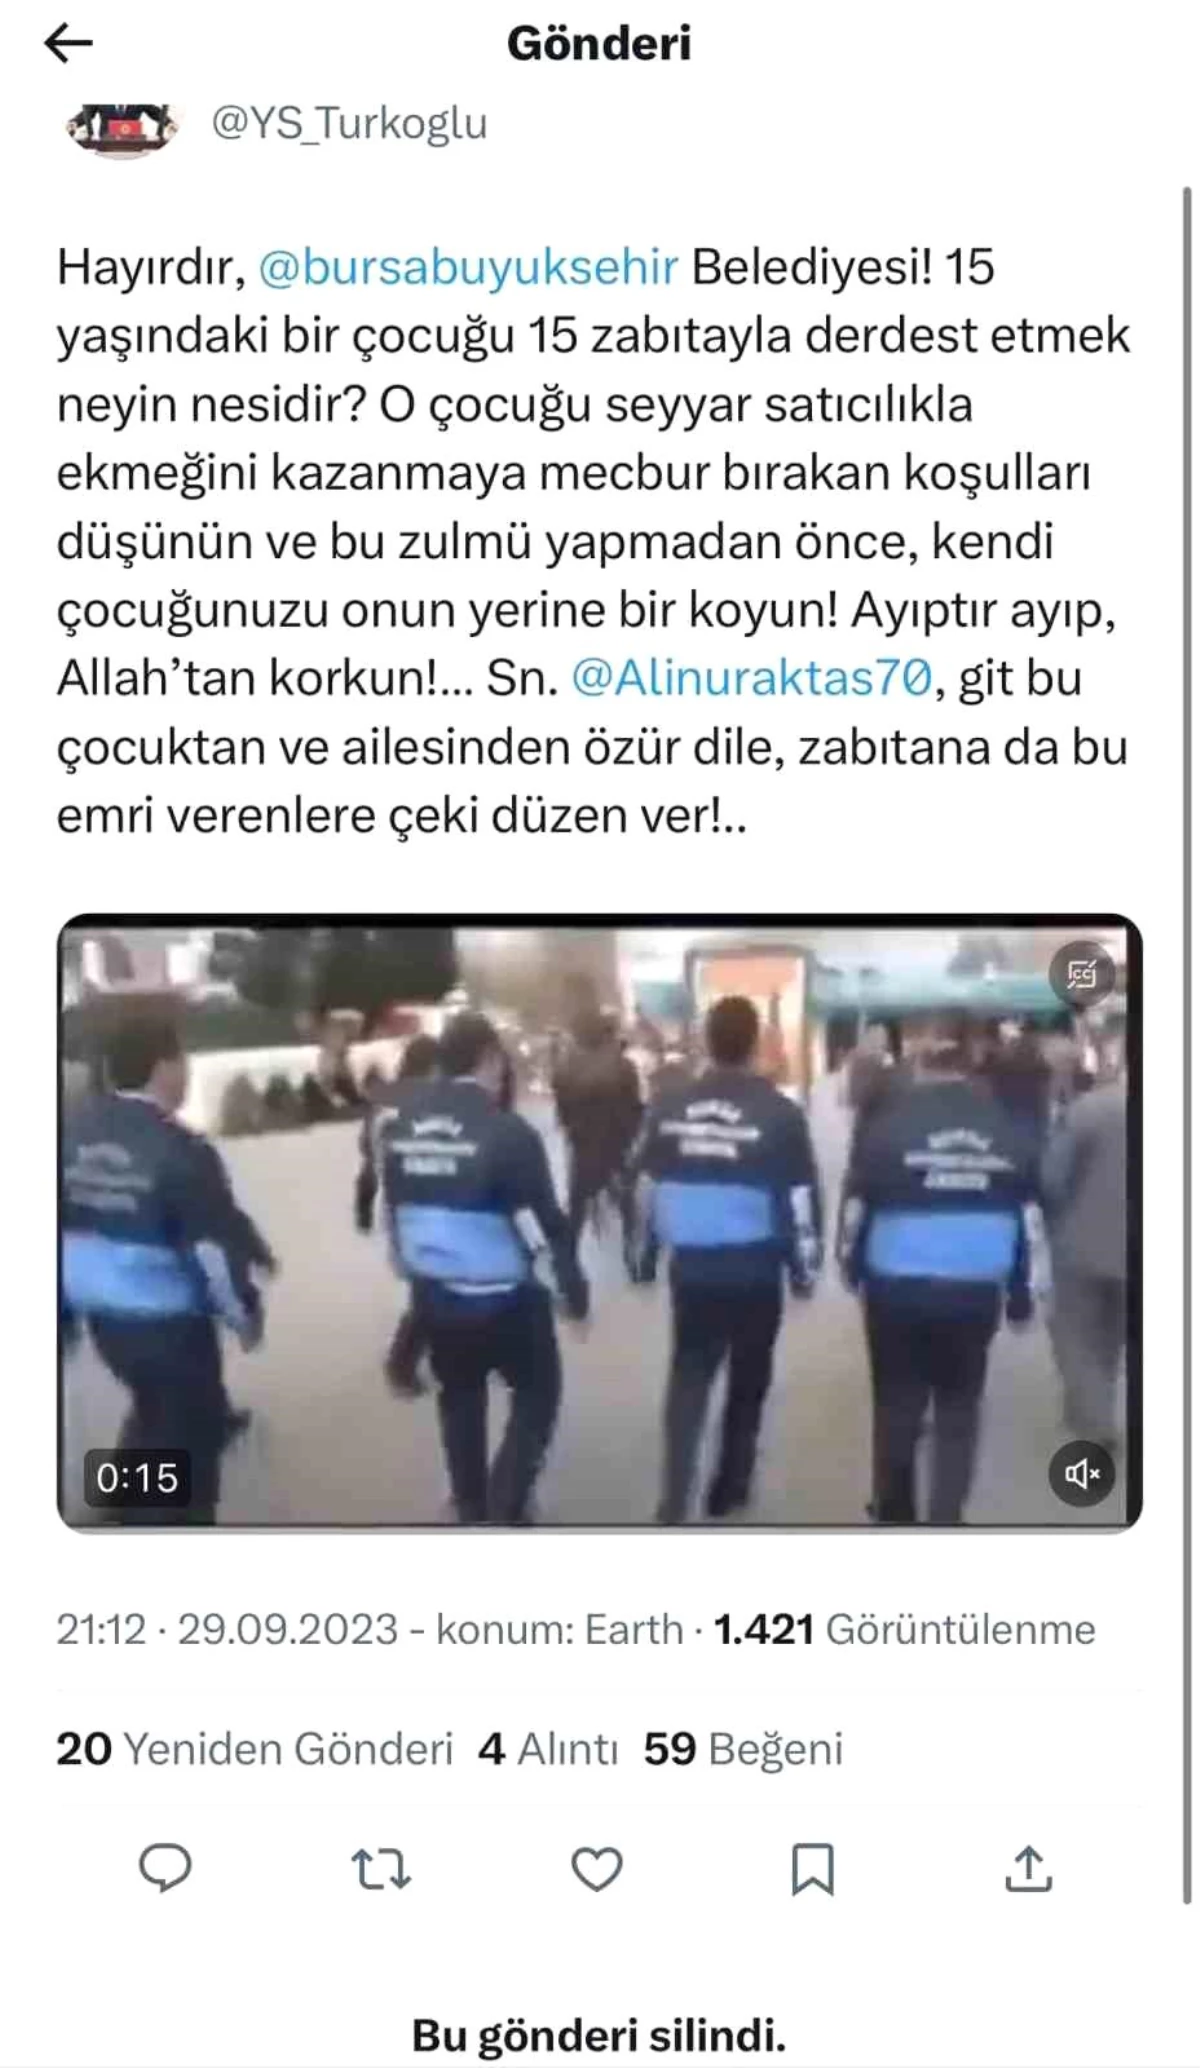 İYİ Parti Milletvekili Selçuk Türkoğlu, 10 yıl önceki videoyu paylaşınca tartışma çıktı